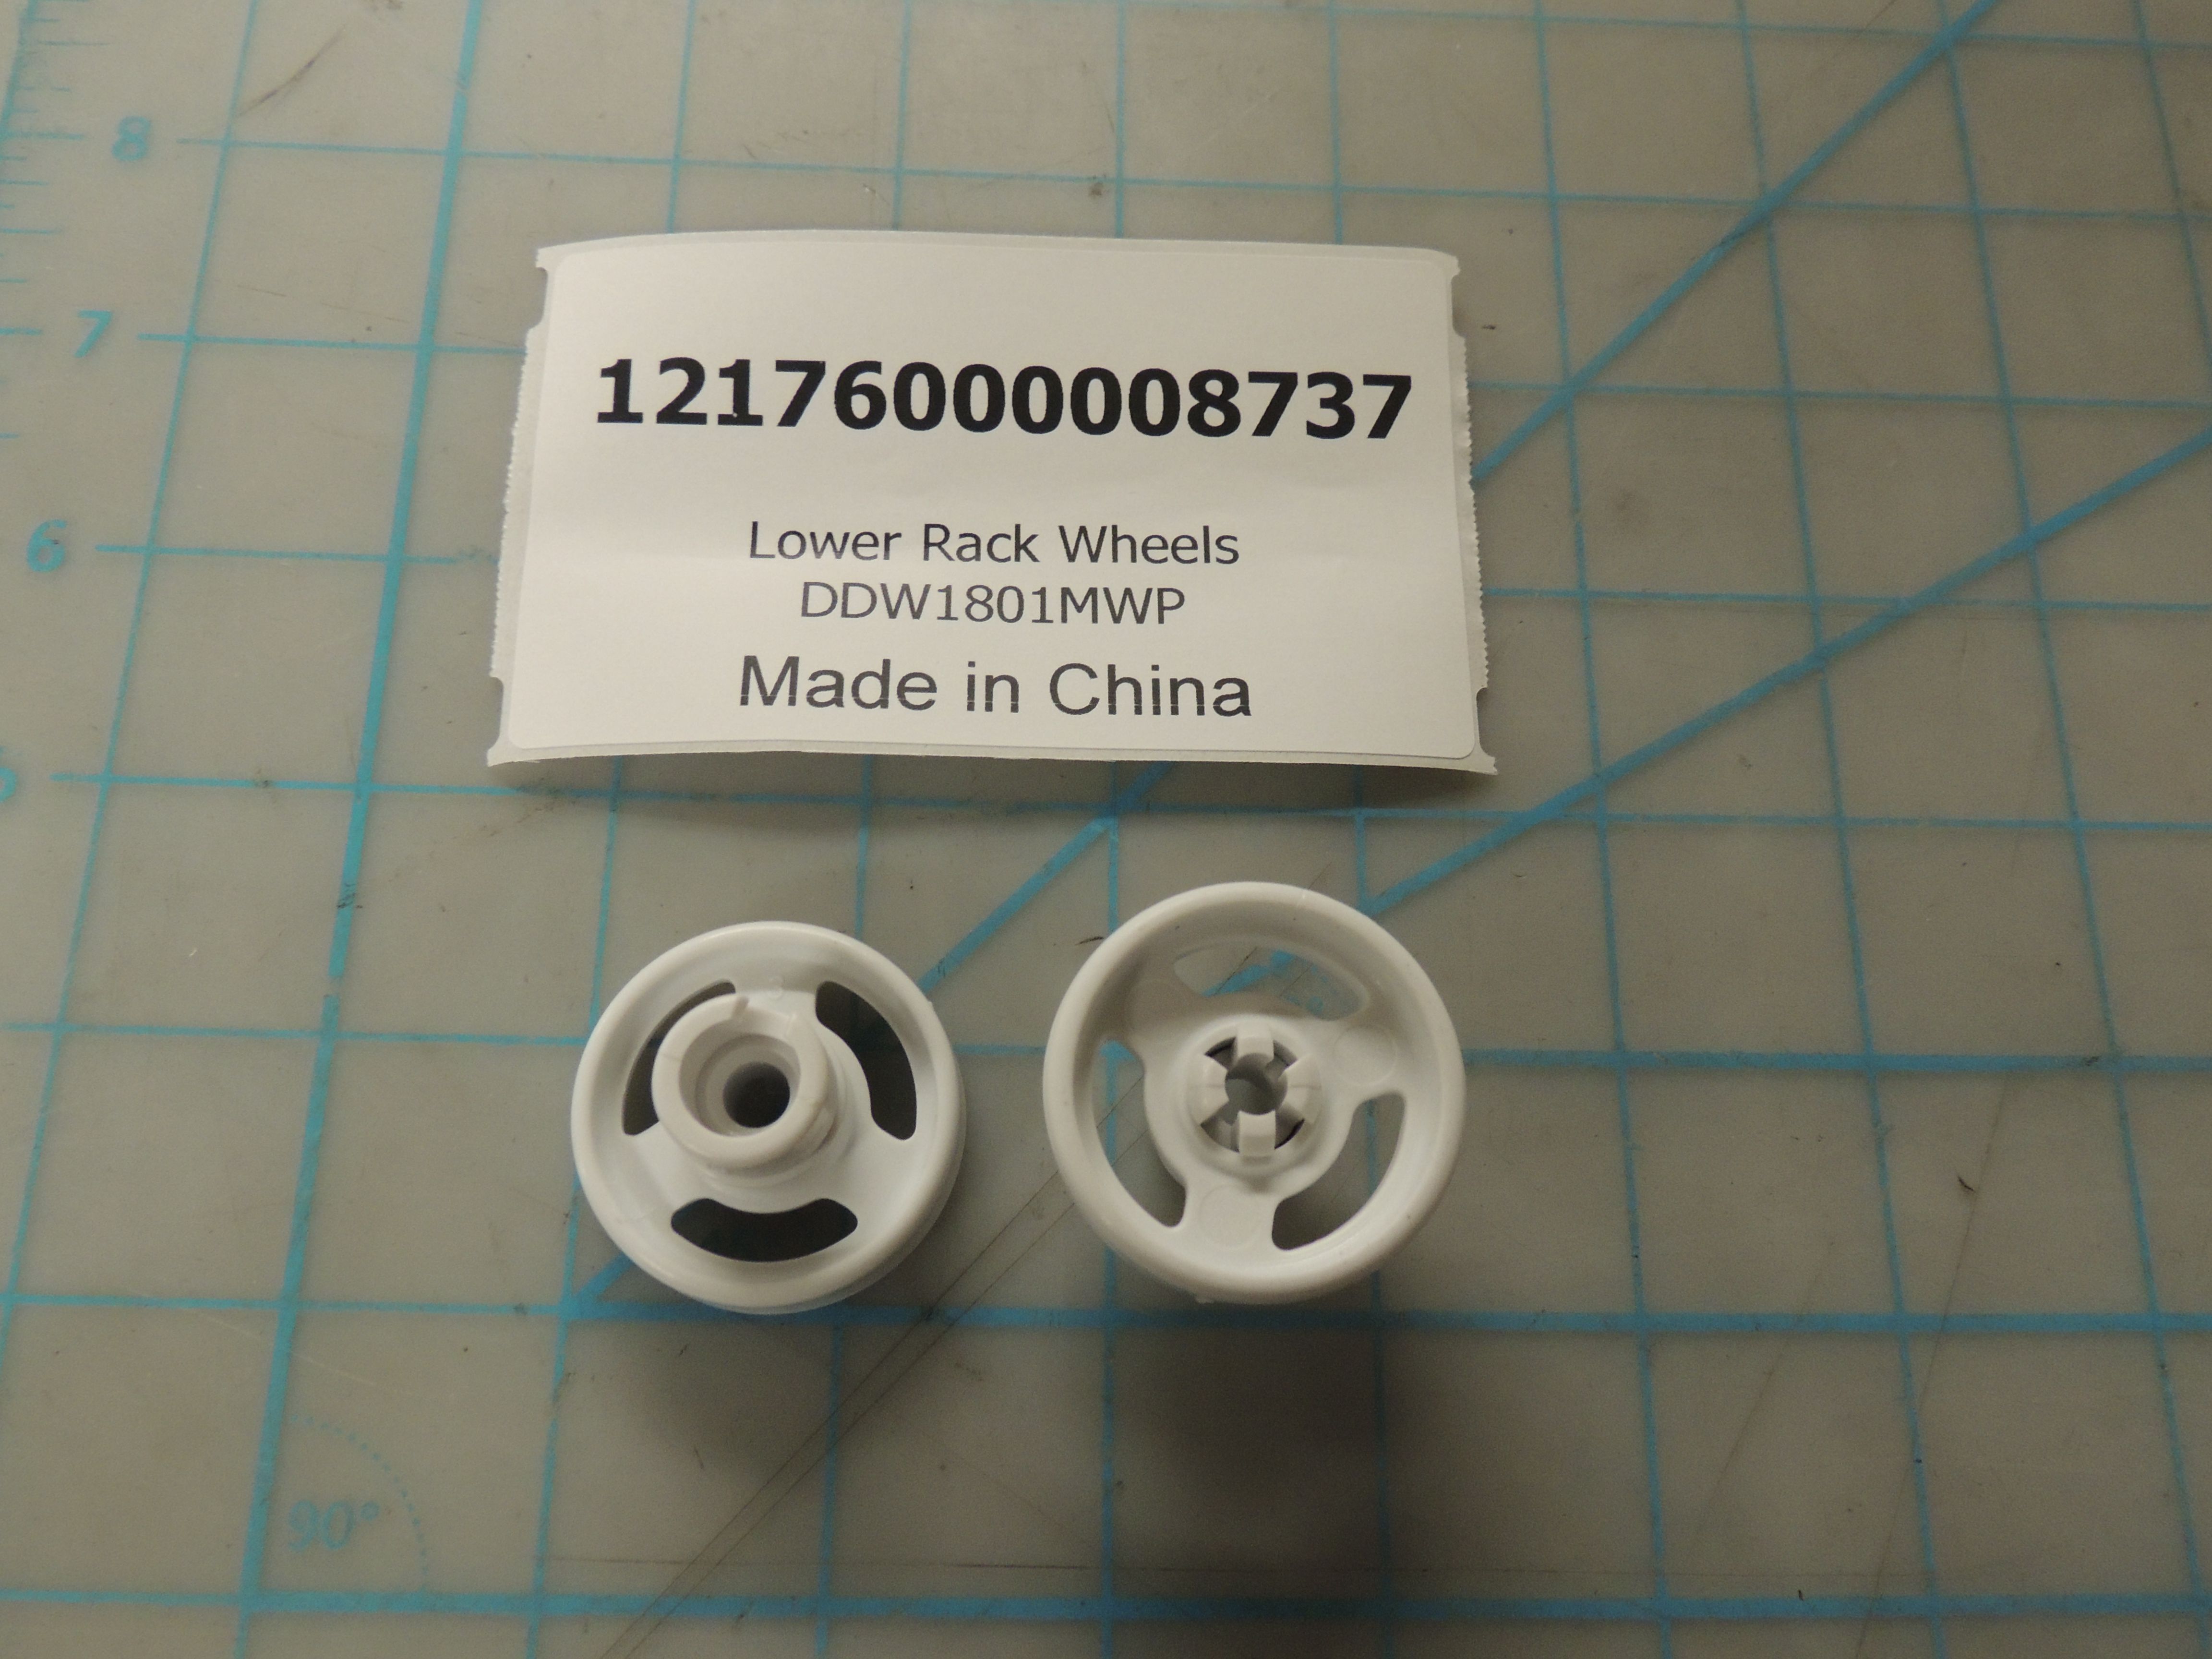 Lower Rack Wheel DDW1801MWP